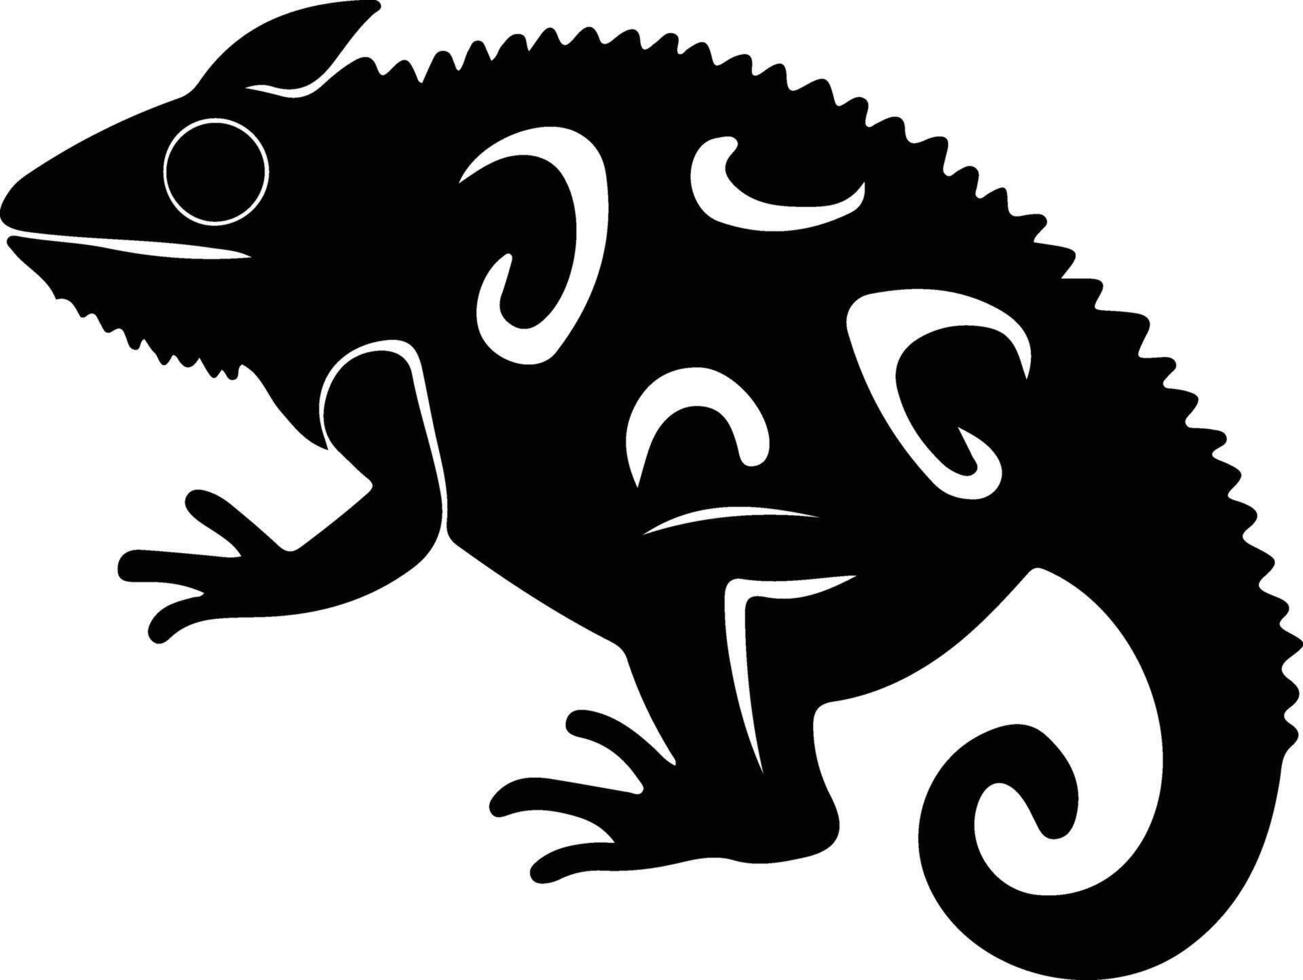 chameleon black silhouette vector